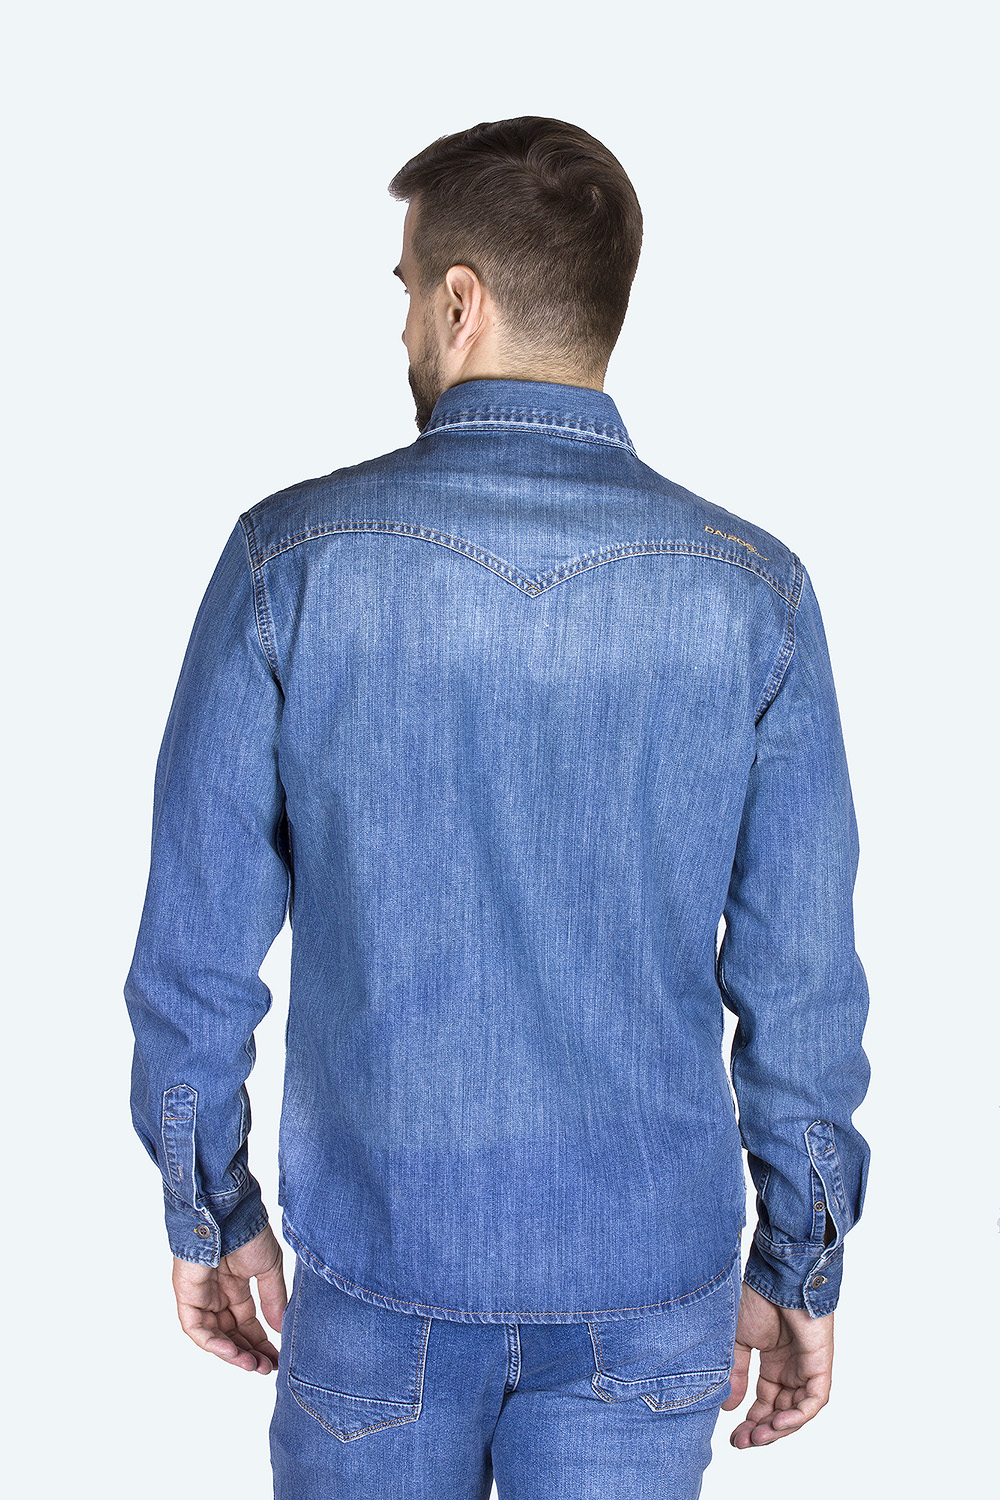 Джинсовая рубашка мужская Dairos GD5080100 синяя 2XL